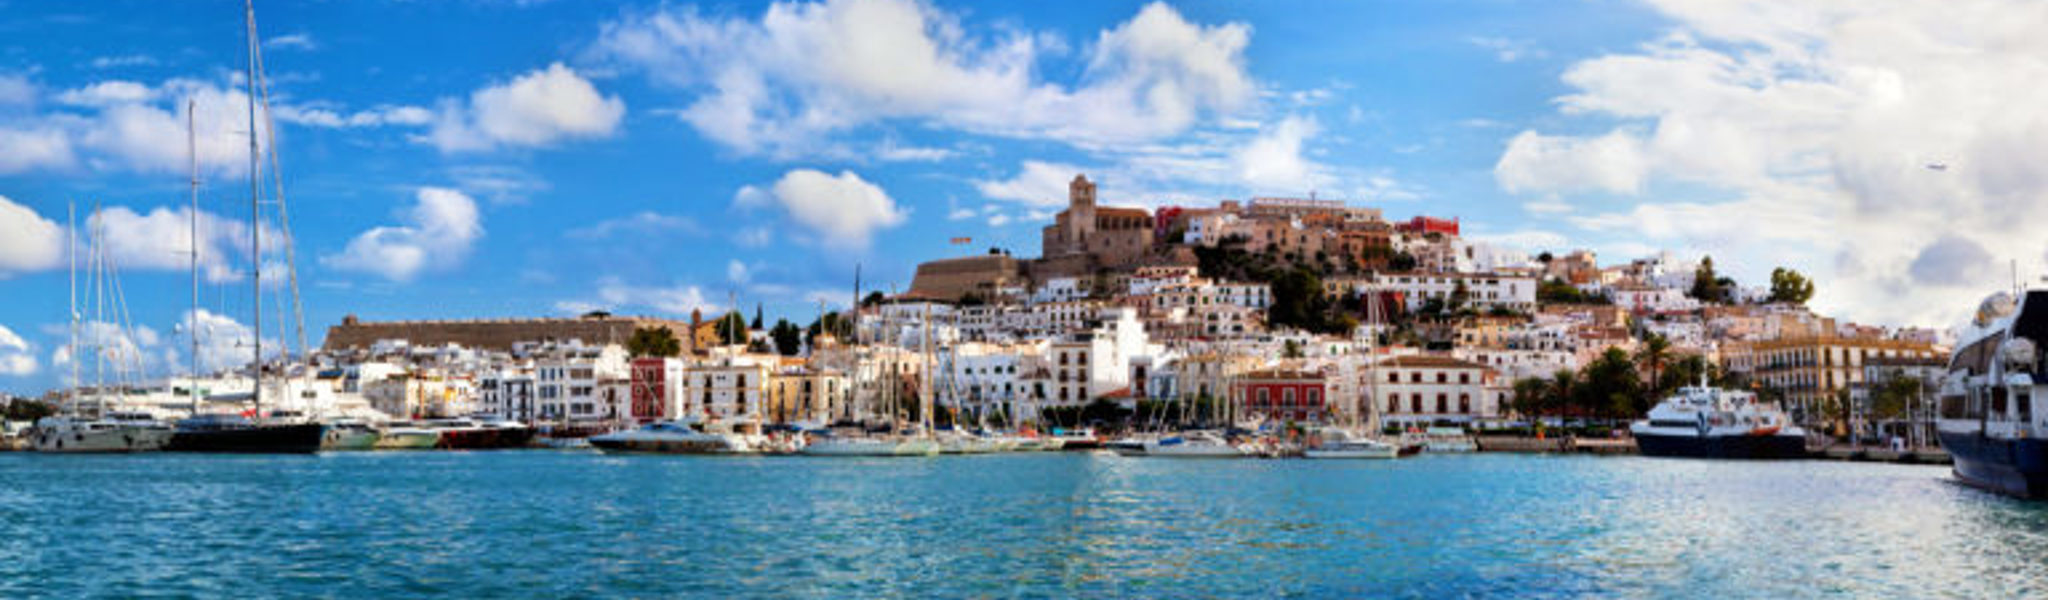 Ibiza Città Vecchia: una breve storia